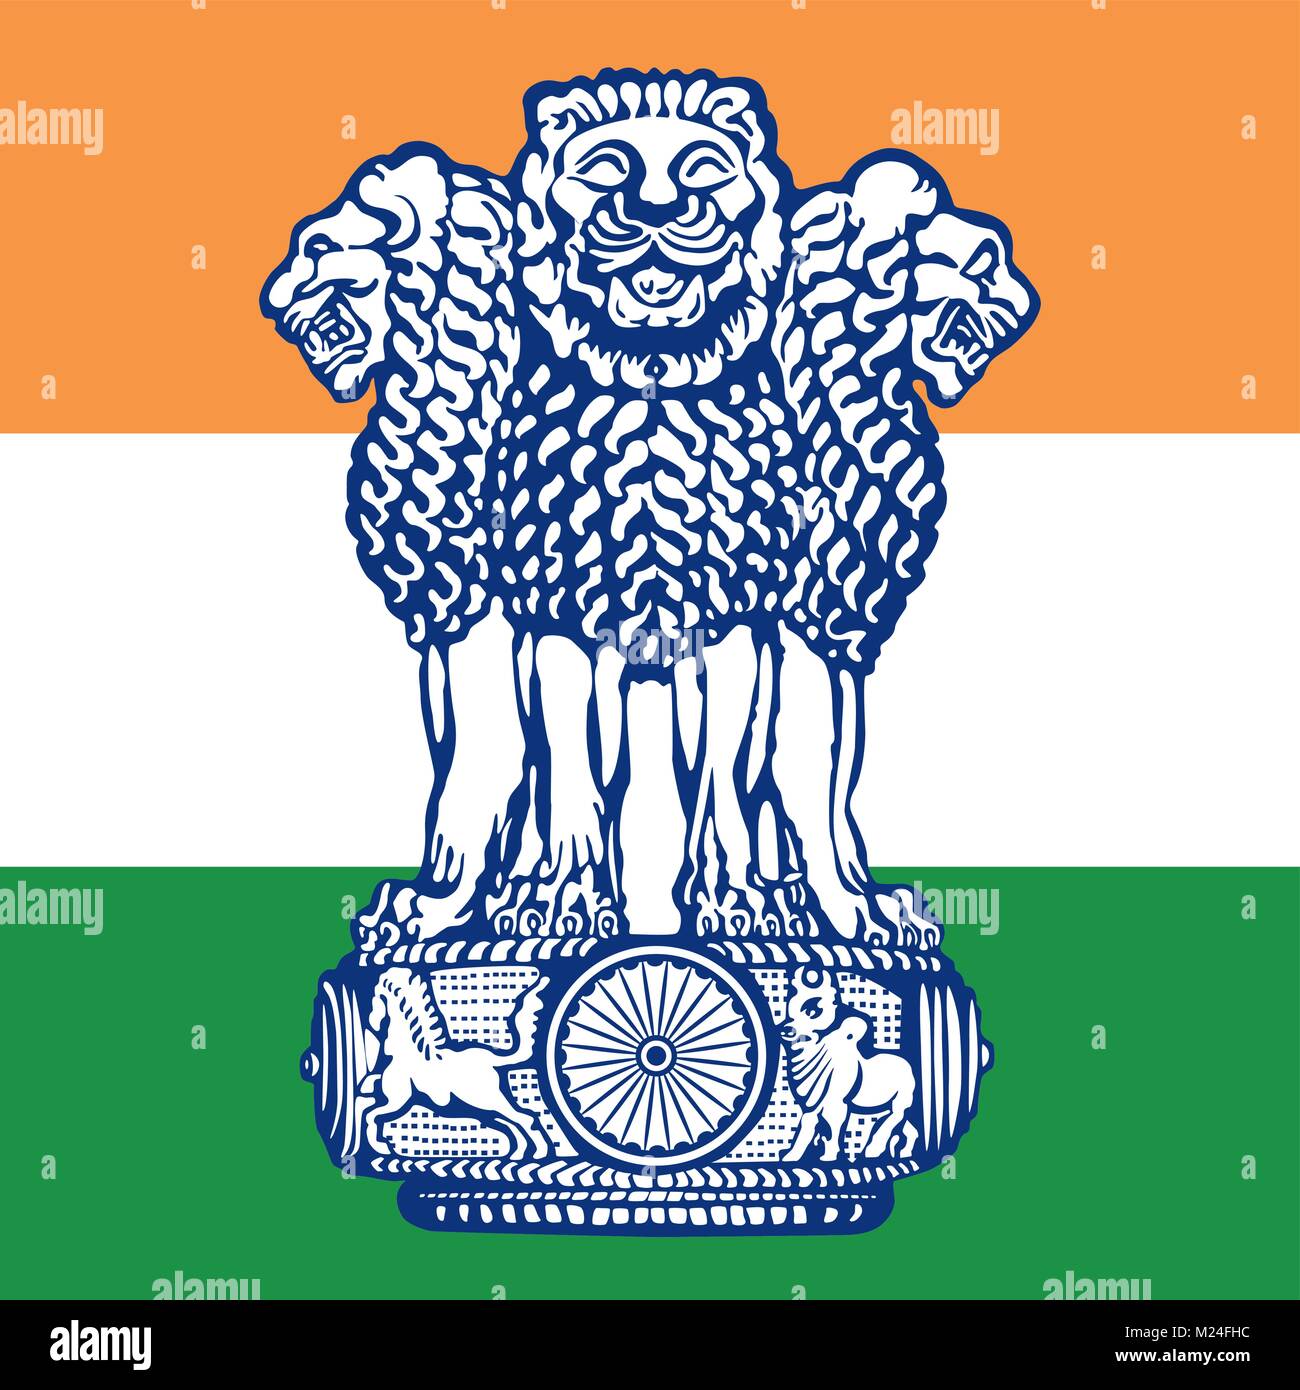 Indien Wappen und Flagge, offiziellen Symbole der Nation Stock Vektor